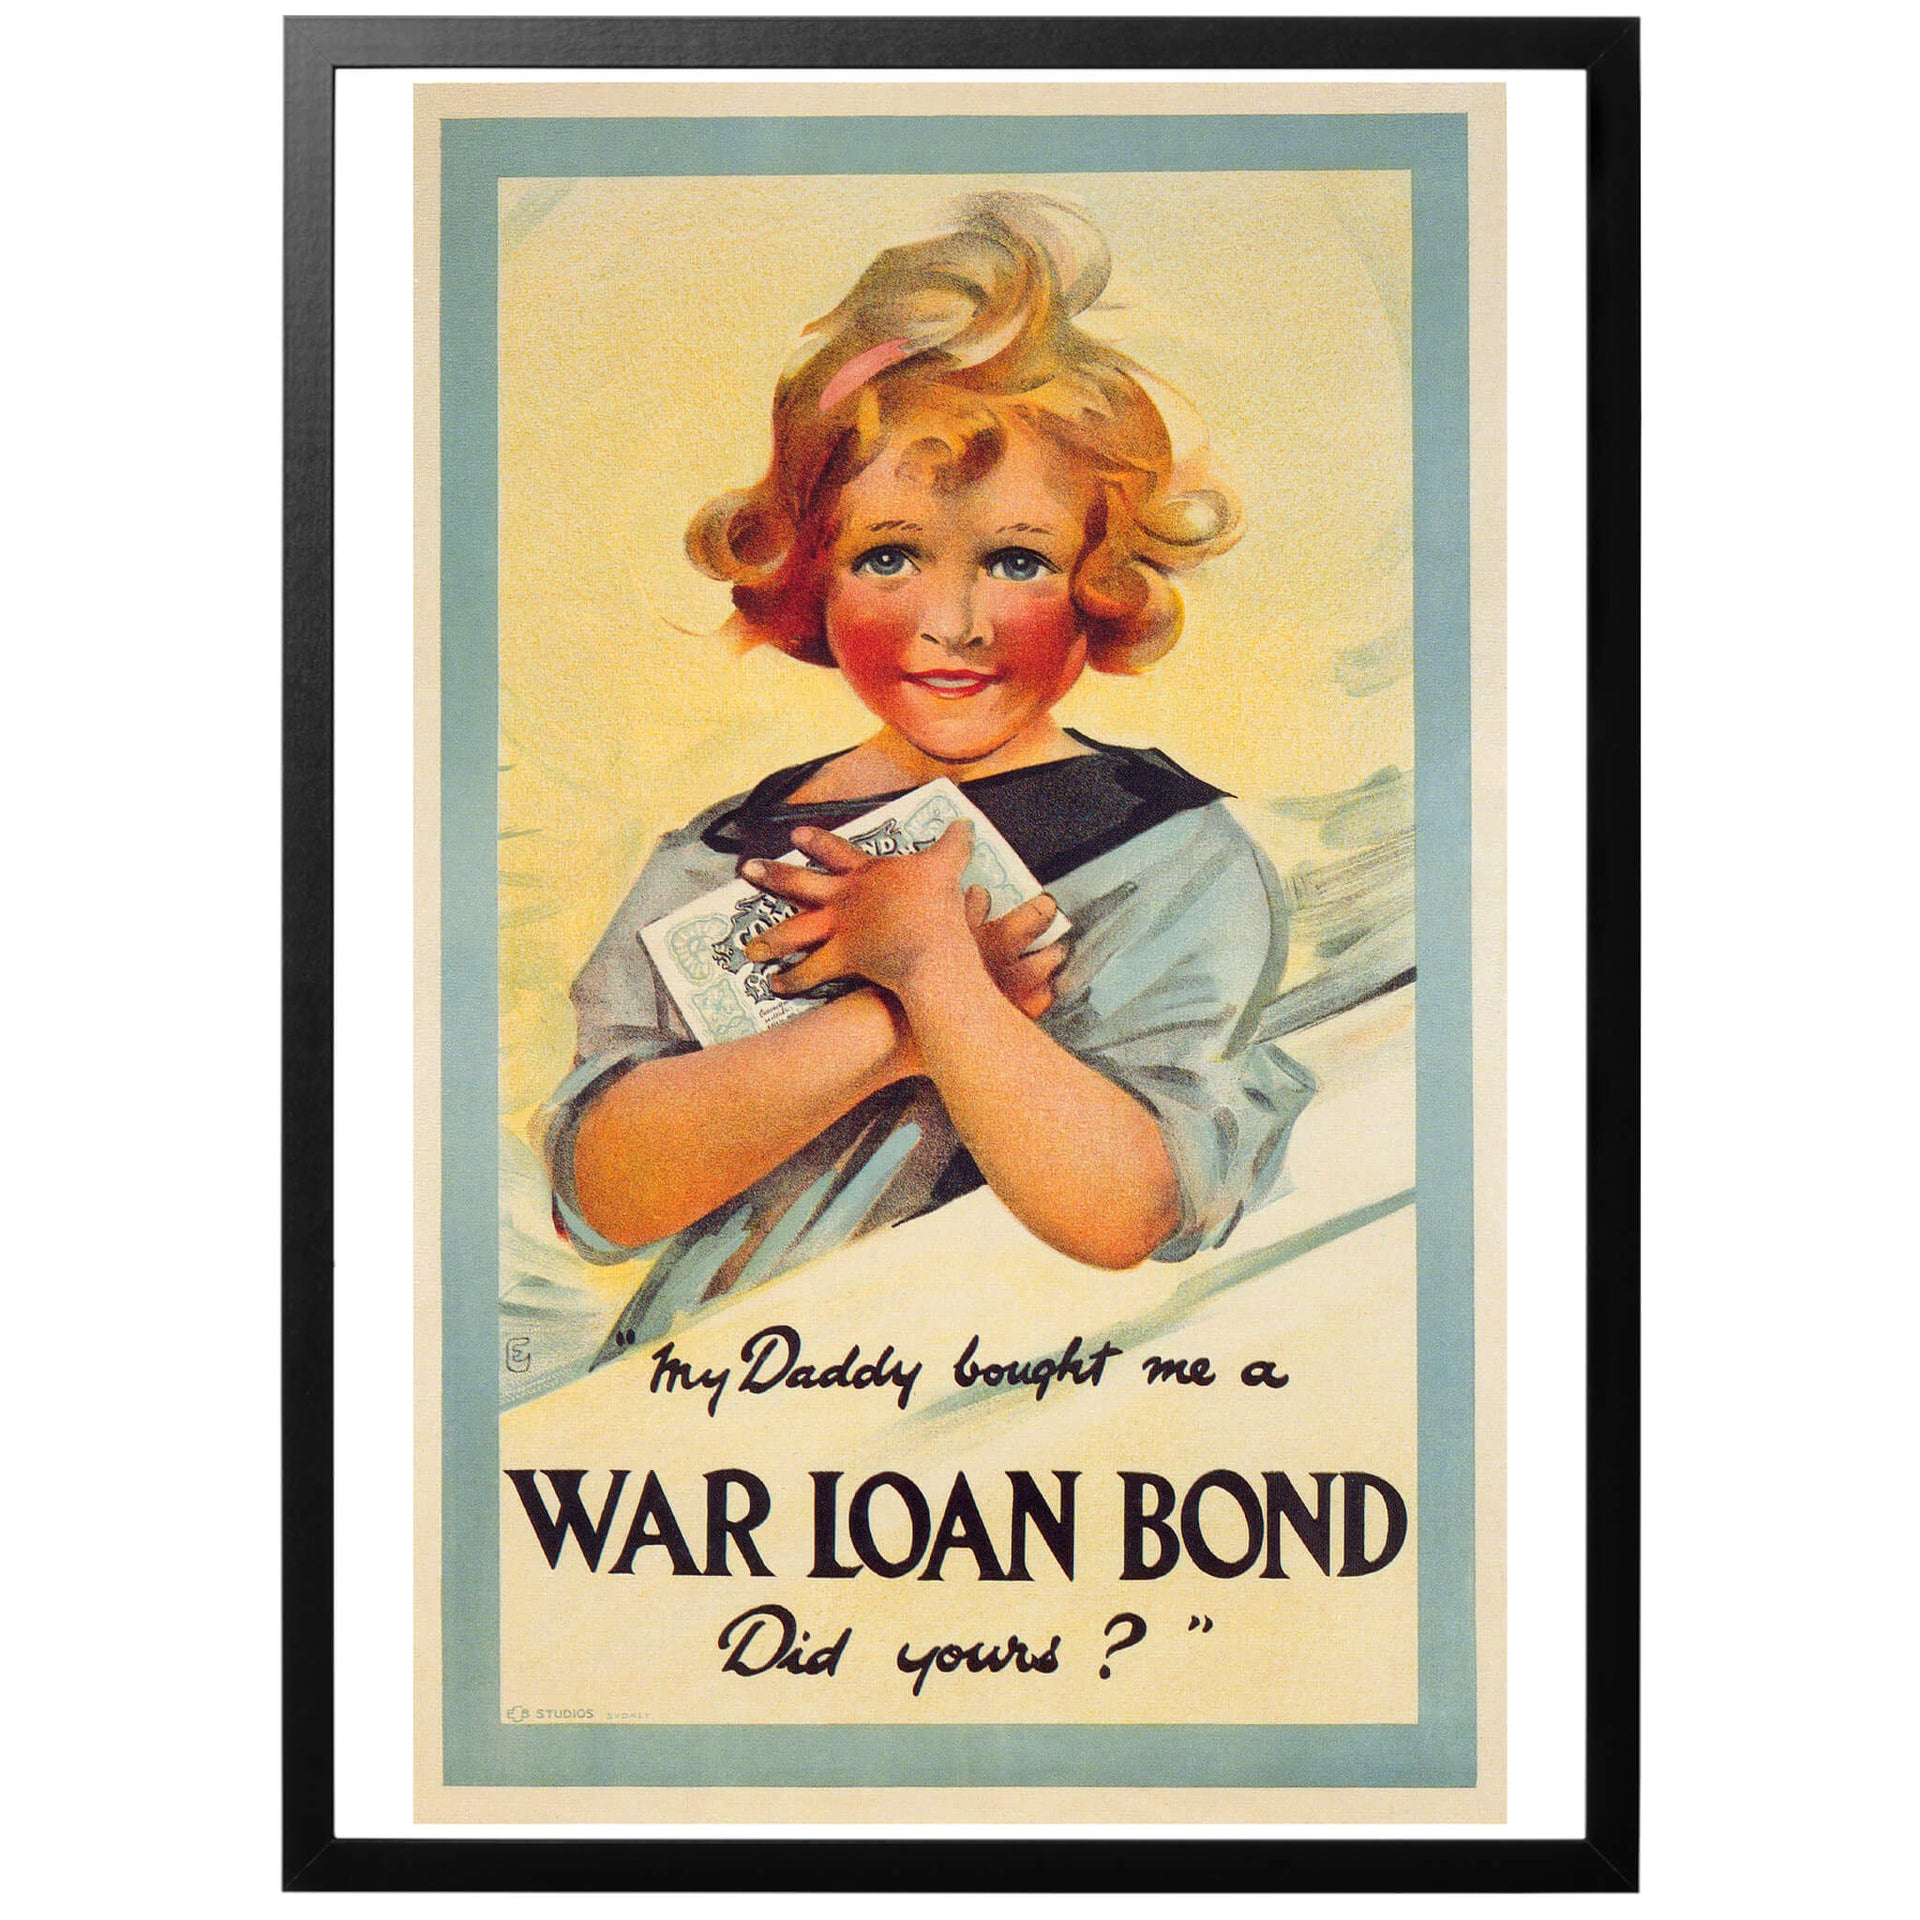 My daddy bought me a War Loan Bond, did yours?  "Min pappa köpte en krigsobligation till mig, gjorde din?" Australiensk WW1 affisch från 1916. Australiensk WWI affisch som appellerar till föräldrarnas dåliga samveten och uppmanar att köpa krigsobligationer till sina barn. 